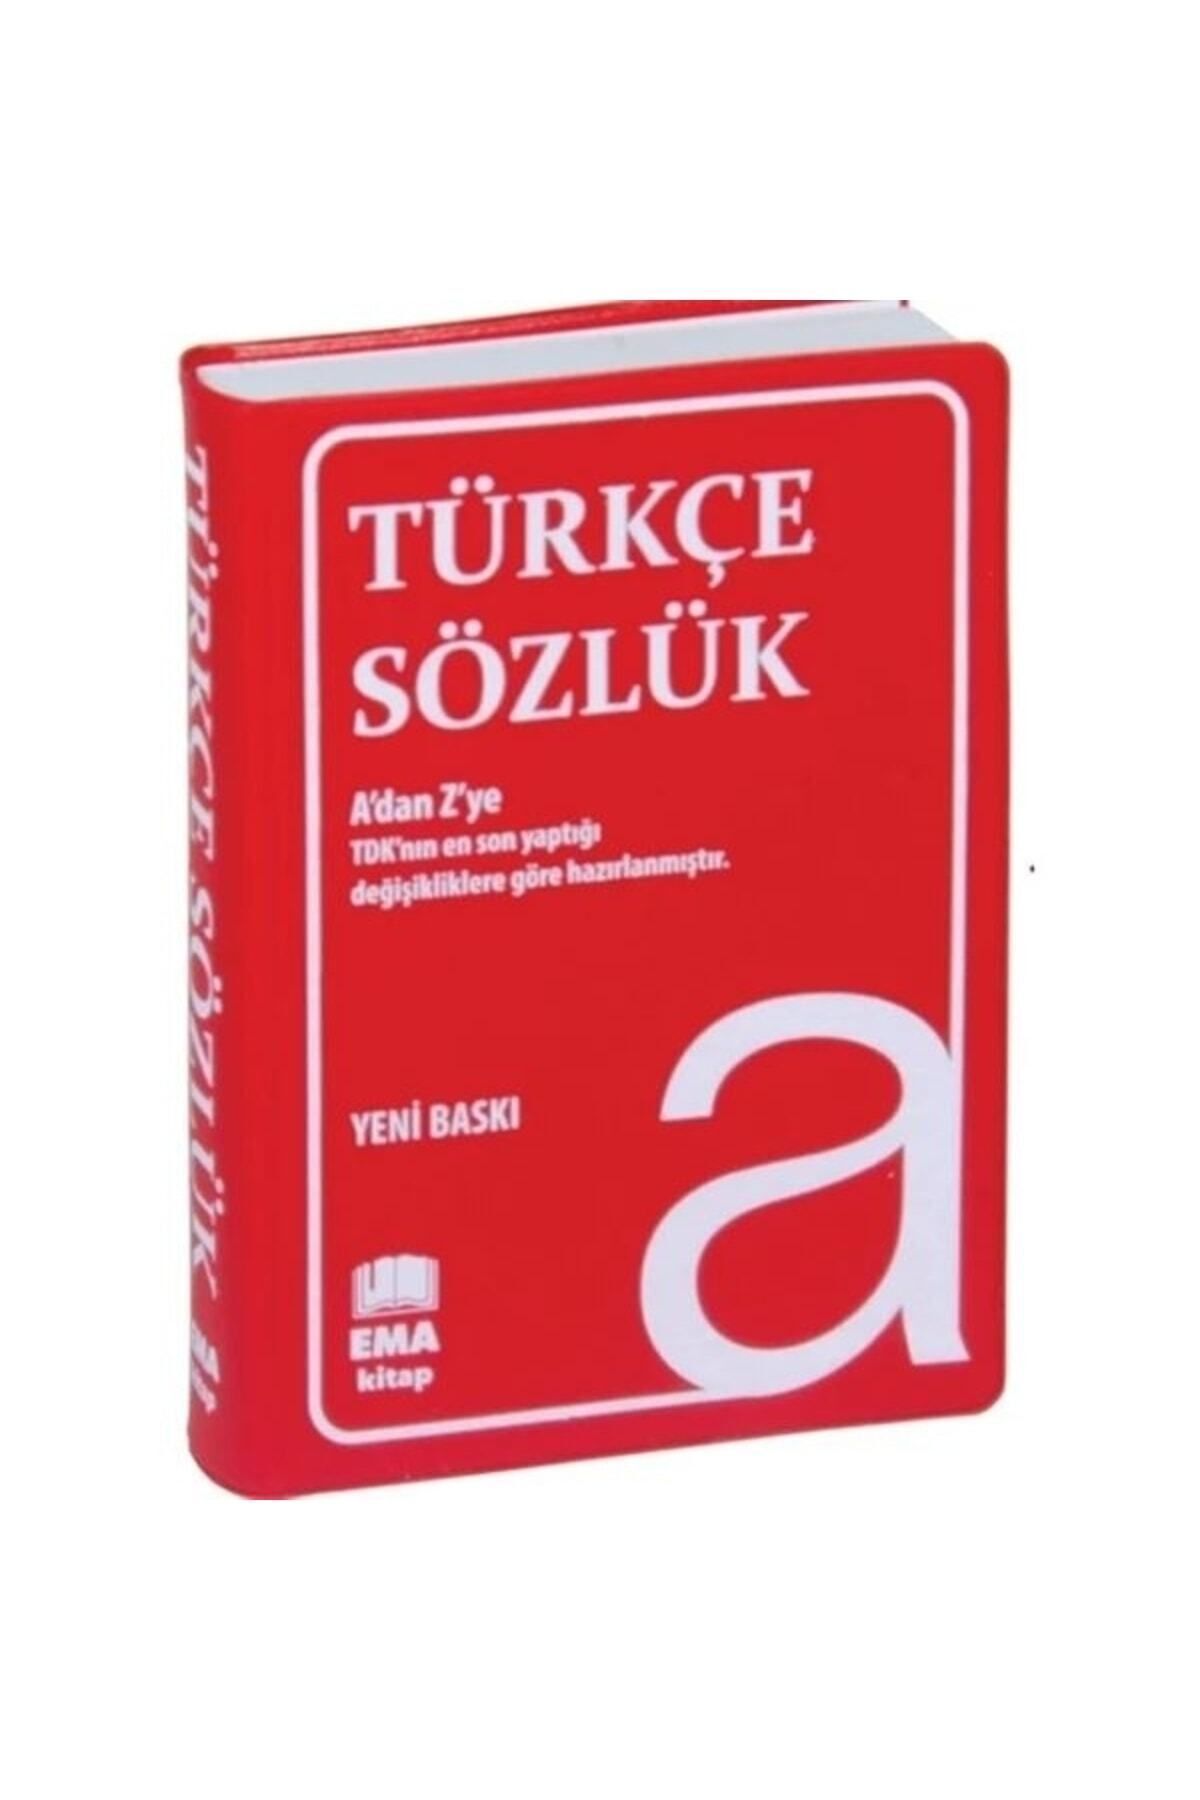 Ema Kitap Türkçe Sözlük A Dan Z Ye Tdk Uyumlu (PLASTİK KAPAK) 2838224